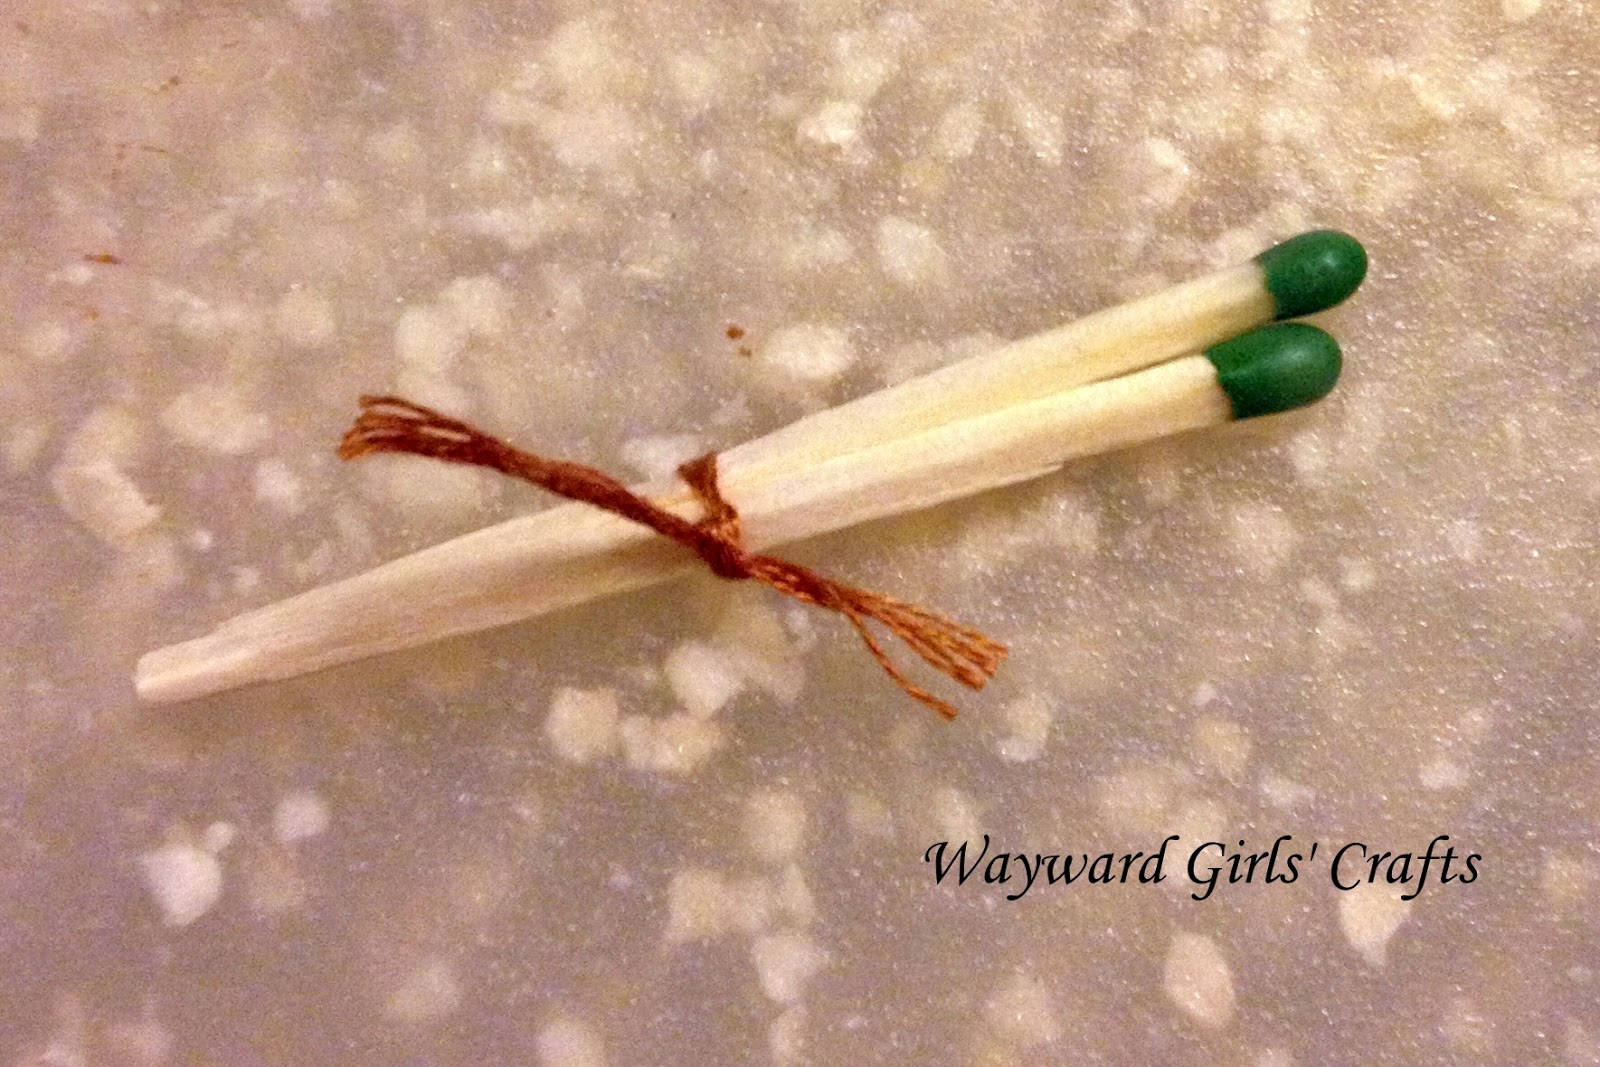 Wayward Girls' Crafts: Waterproofing Matches